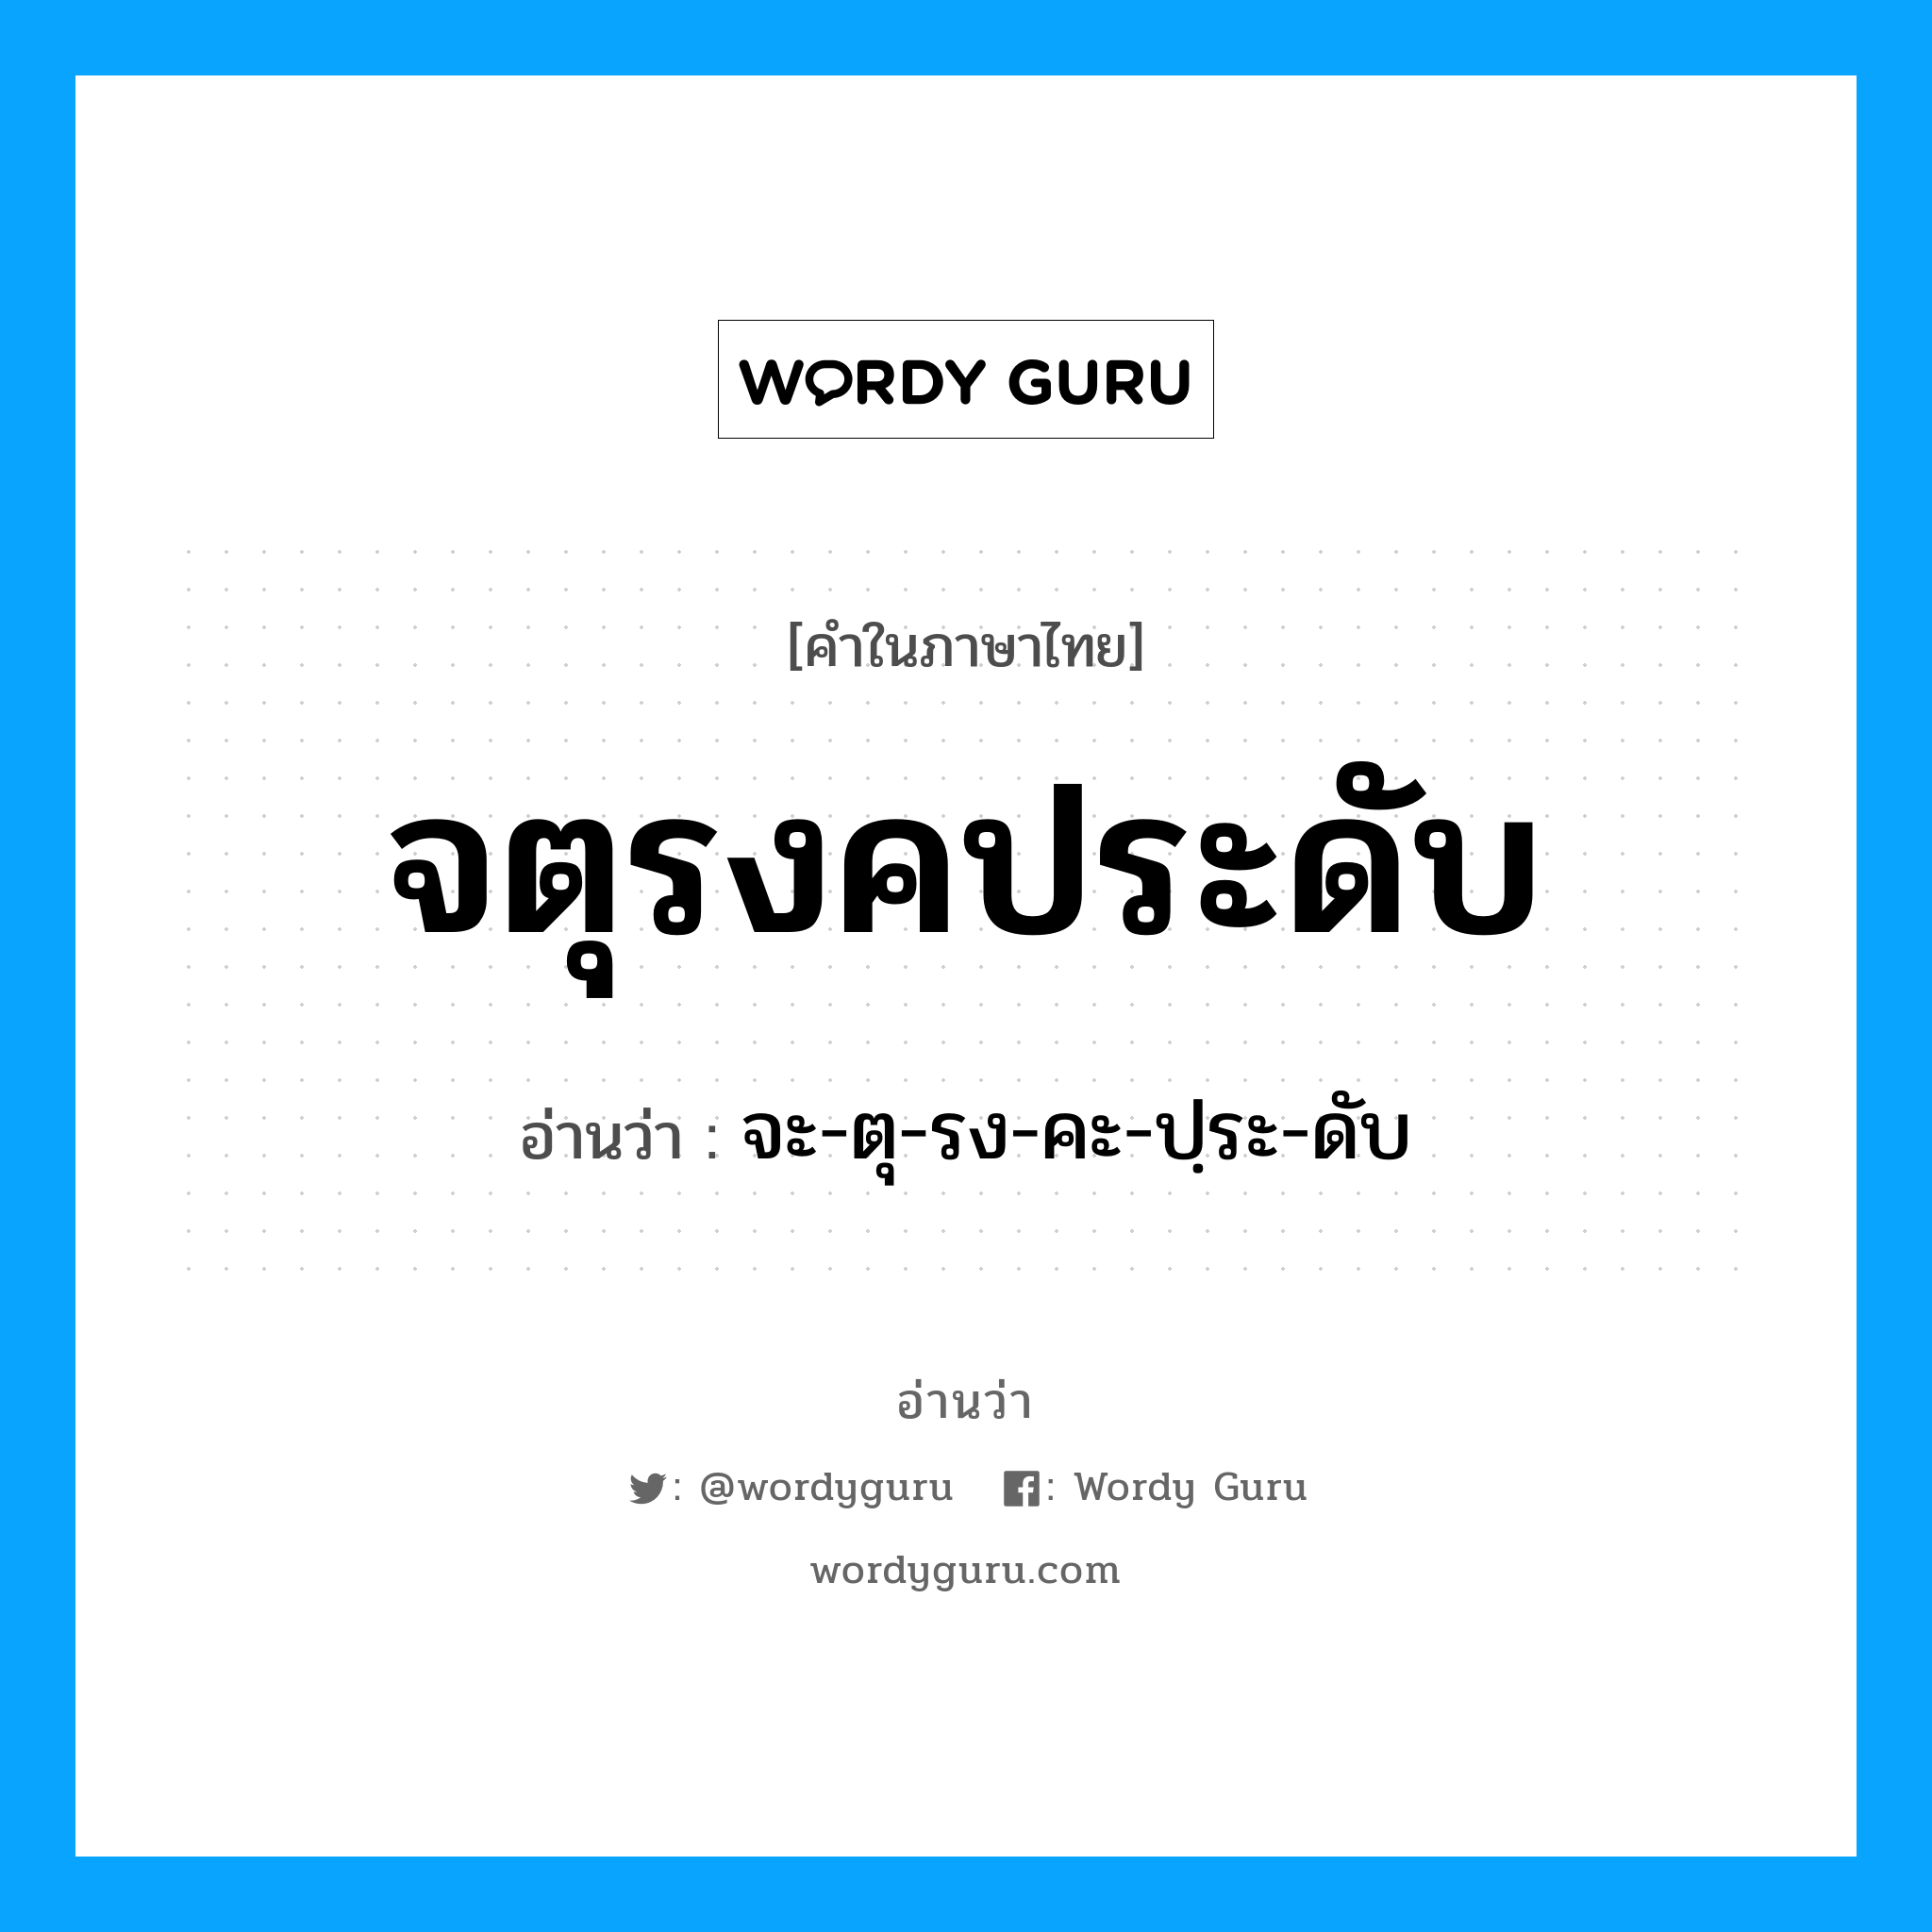 จะ-ตุ-รง-คะ-ปฺระ-ดับ เป็นคำอ่านของคำไหน?, คำในภาษาไทย จะ-ตุ-รง-คะ-ปฺระ-ดับ อ่านว่า จตุรงคประดับ